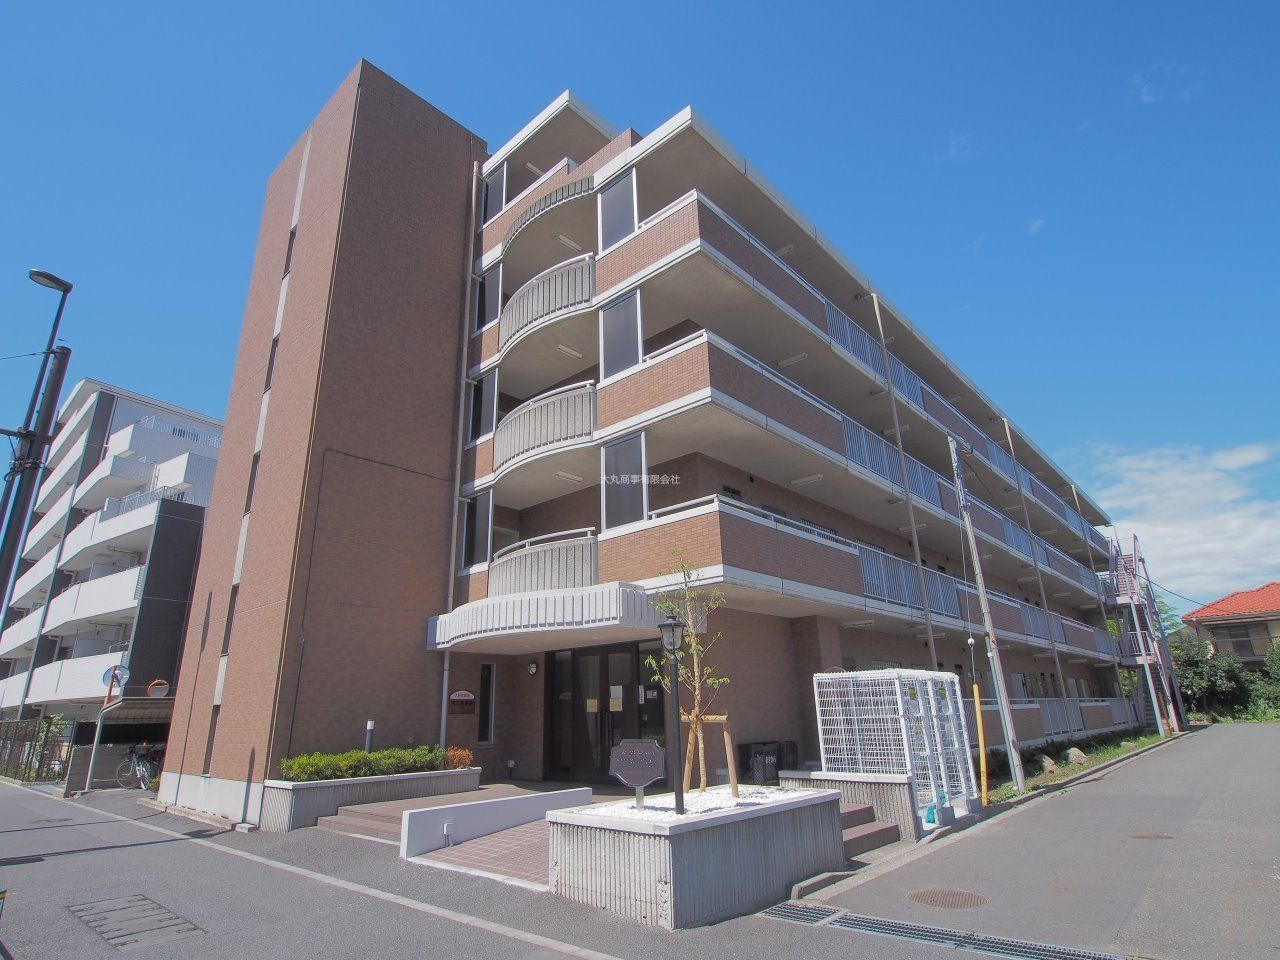 立川市錦町に建つ、鉄筋コンクリート造のマンション「ソリドール立川」。2LDK(53.22㎡)のお部屋には冬でも明るく暖かい南向きリビングがあります。敷地内駐車場もあり、バイクも相談可能。